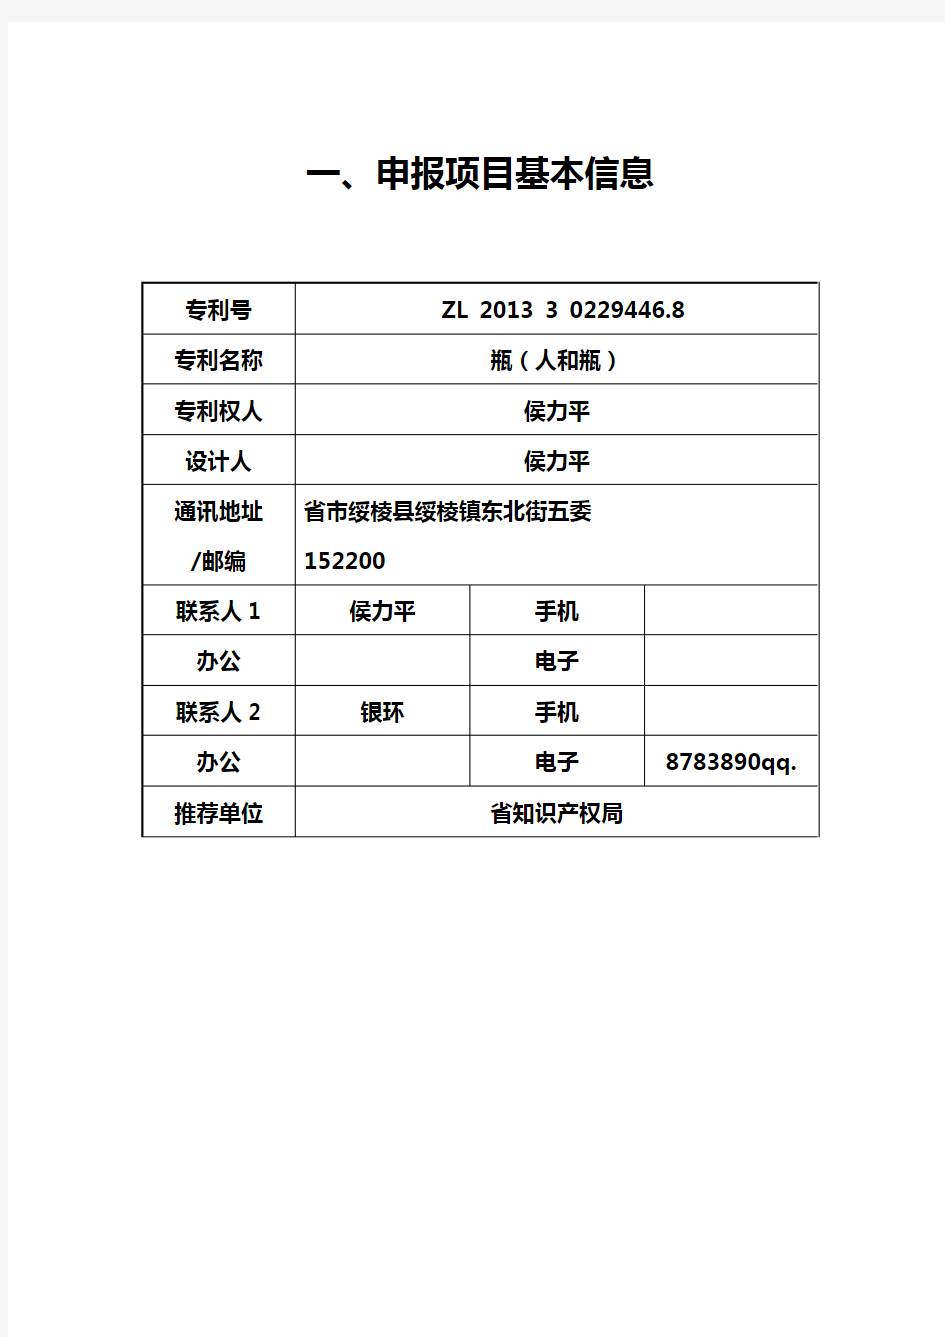 中国专利奖申报书(外观设计2)